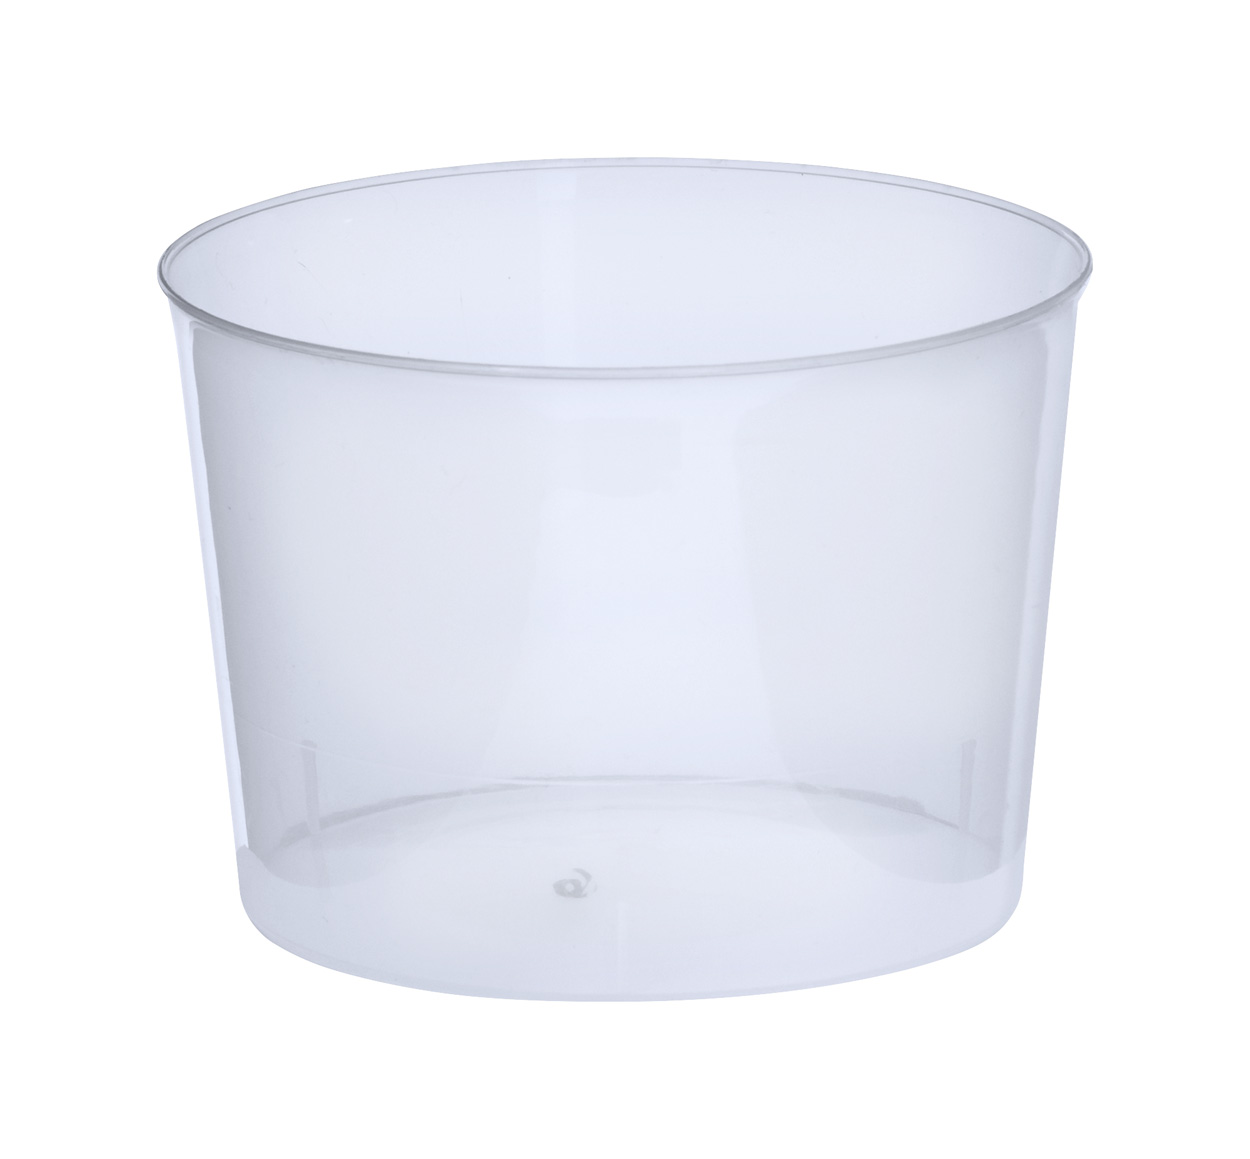 Chiquito cup - Transparente